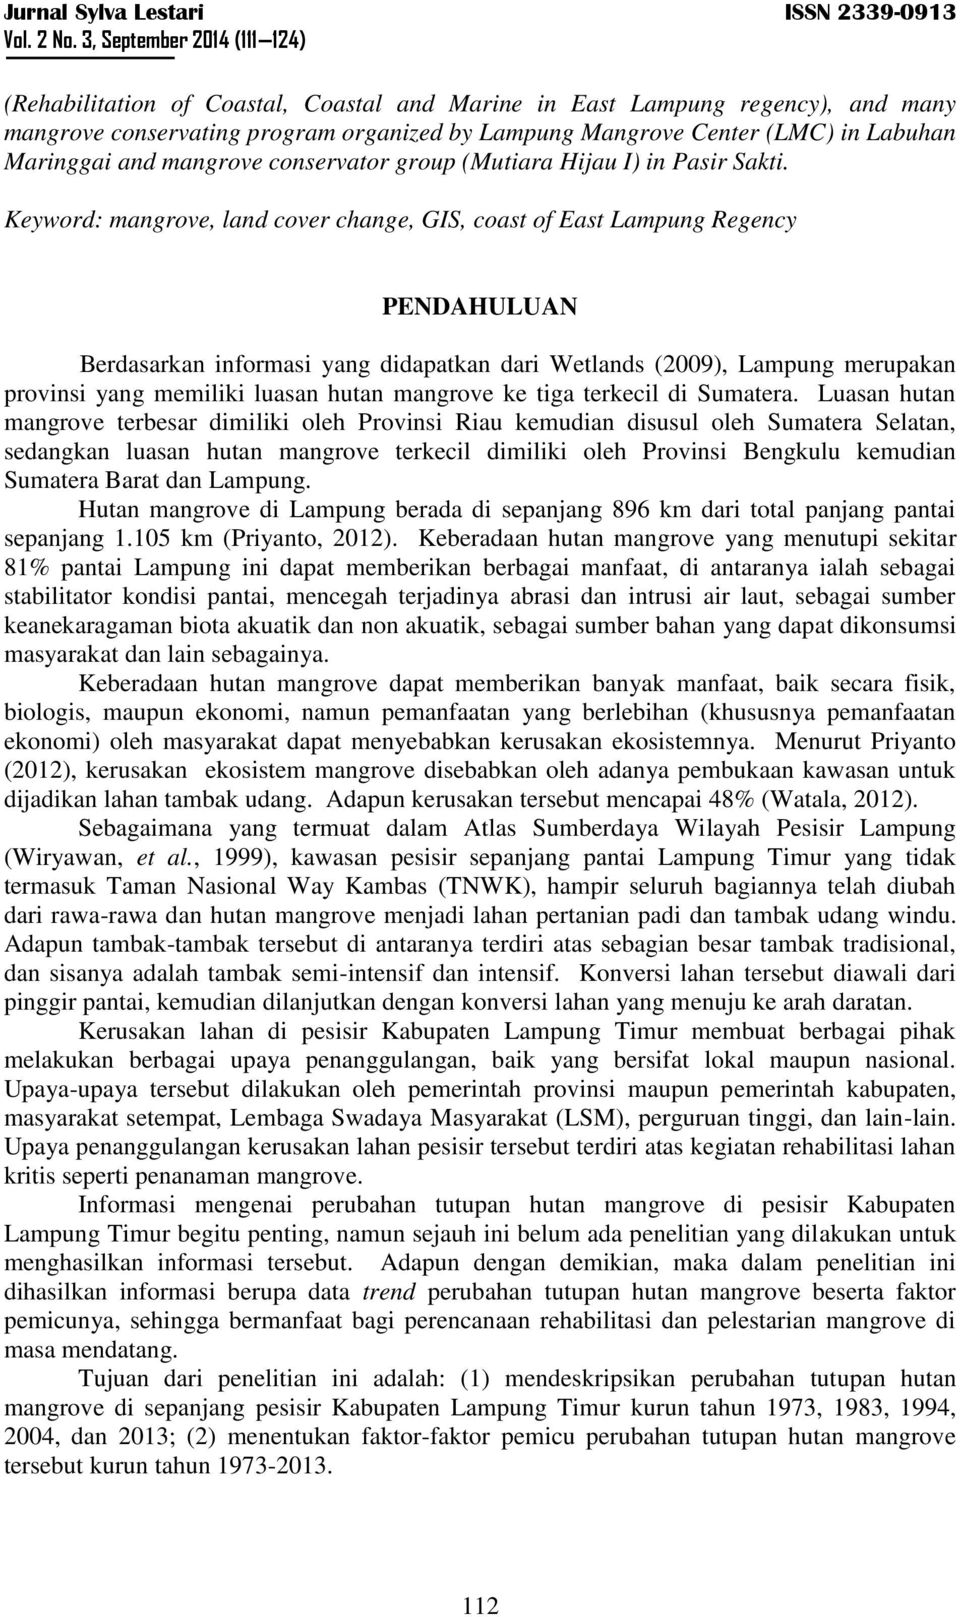 Keyword: mangrove, land cover change, GIS, coast of East Lampung Regency PENDAHULUAN Berdasarkan informasi yang didapatkan dari Wetlands (2009), Lampung merupakan provinsi yang memiliki luasan hutan